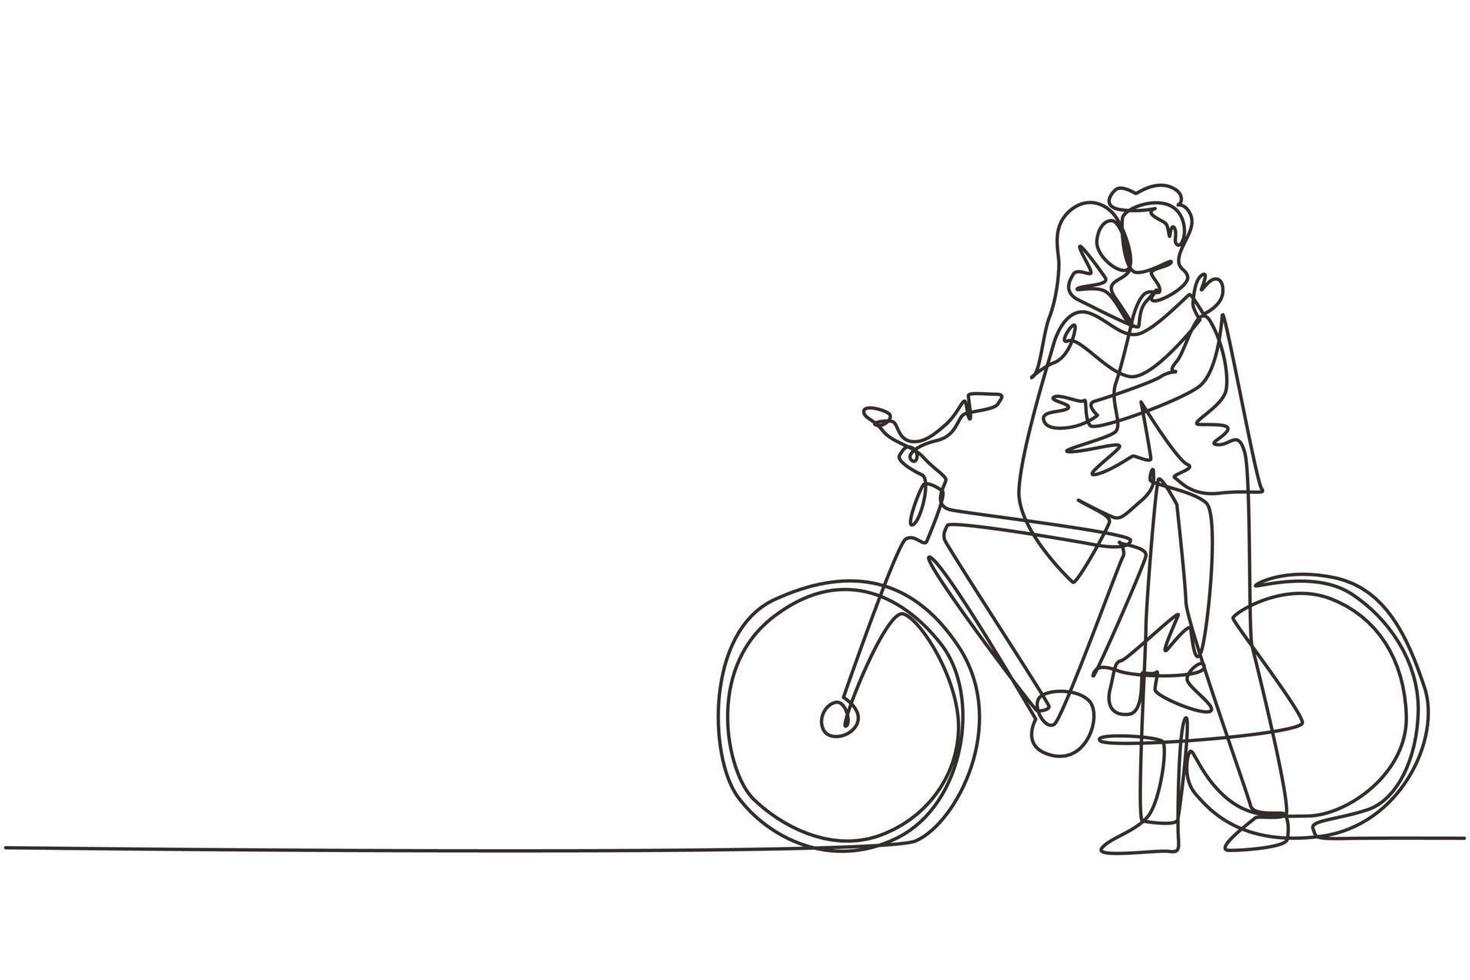 une ligne continue dessinant un jeune couple arabe aimant assis sur un vélo et s'embrassant. relations humaines romantiques, histoire d'amour, famille de jeunes mariés dans une aventure de voyage de lune de miel. conception de dessin à une seule ligne vecteur